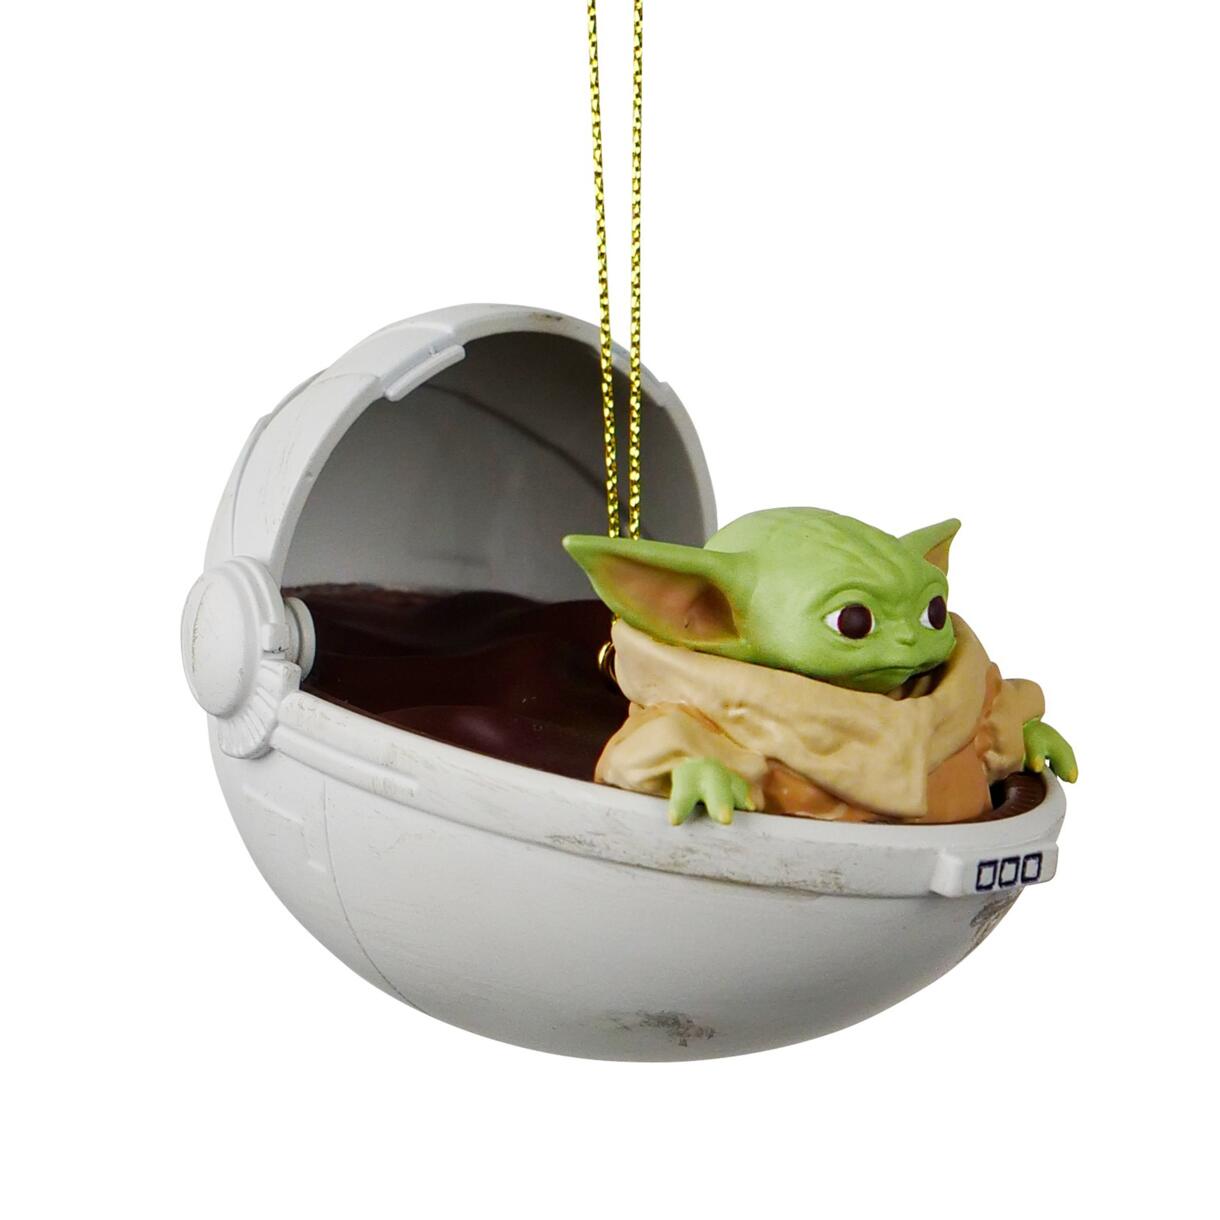 Adorno de fiesta para colgar Disney Star Wars Yoda Verde 1